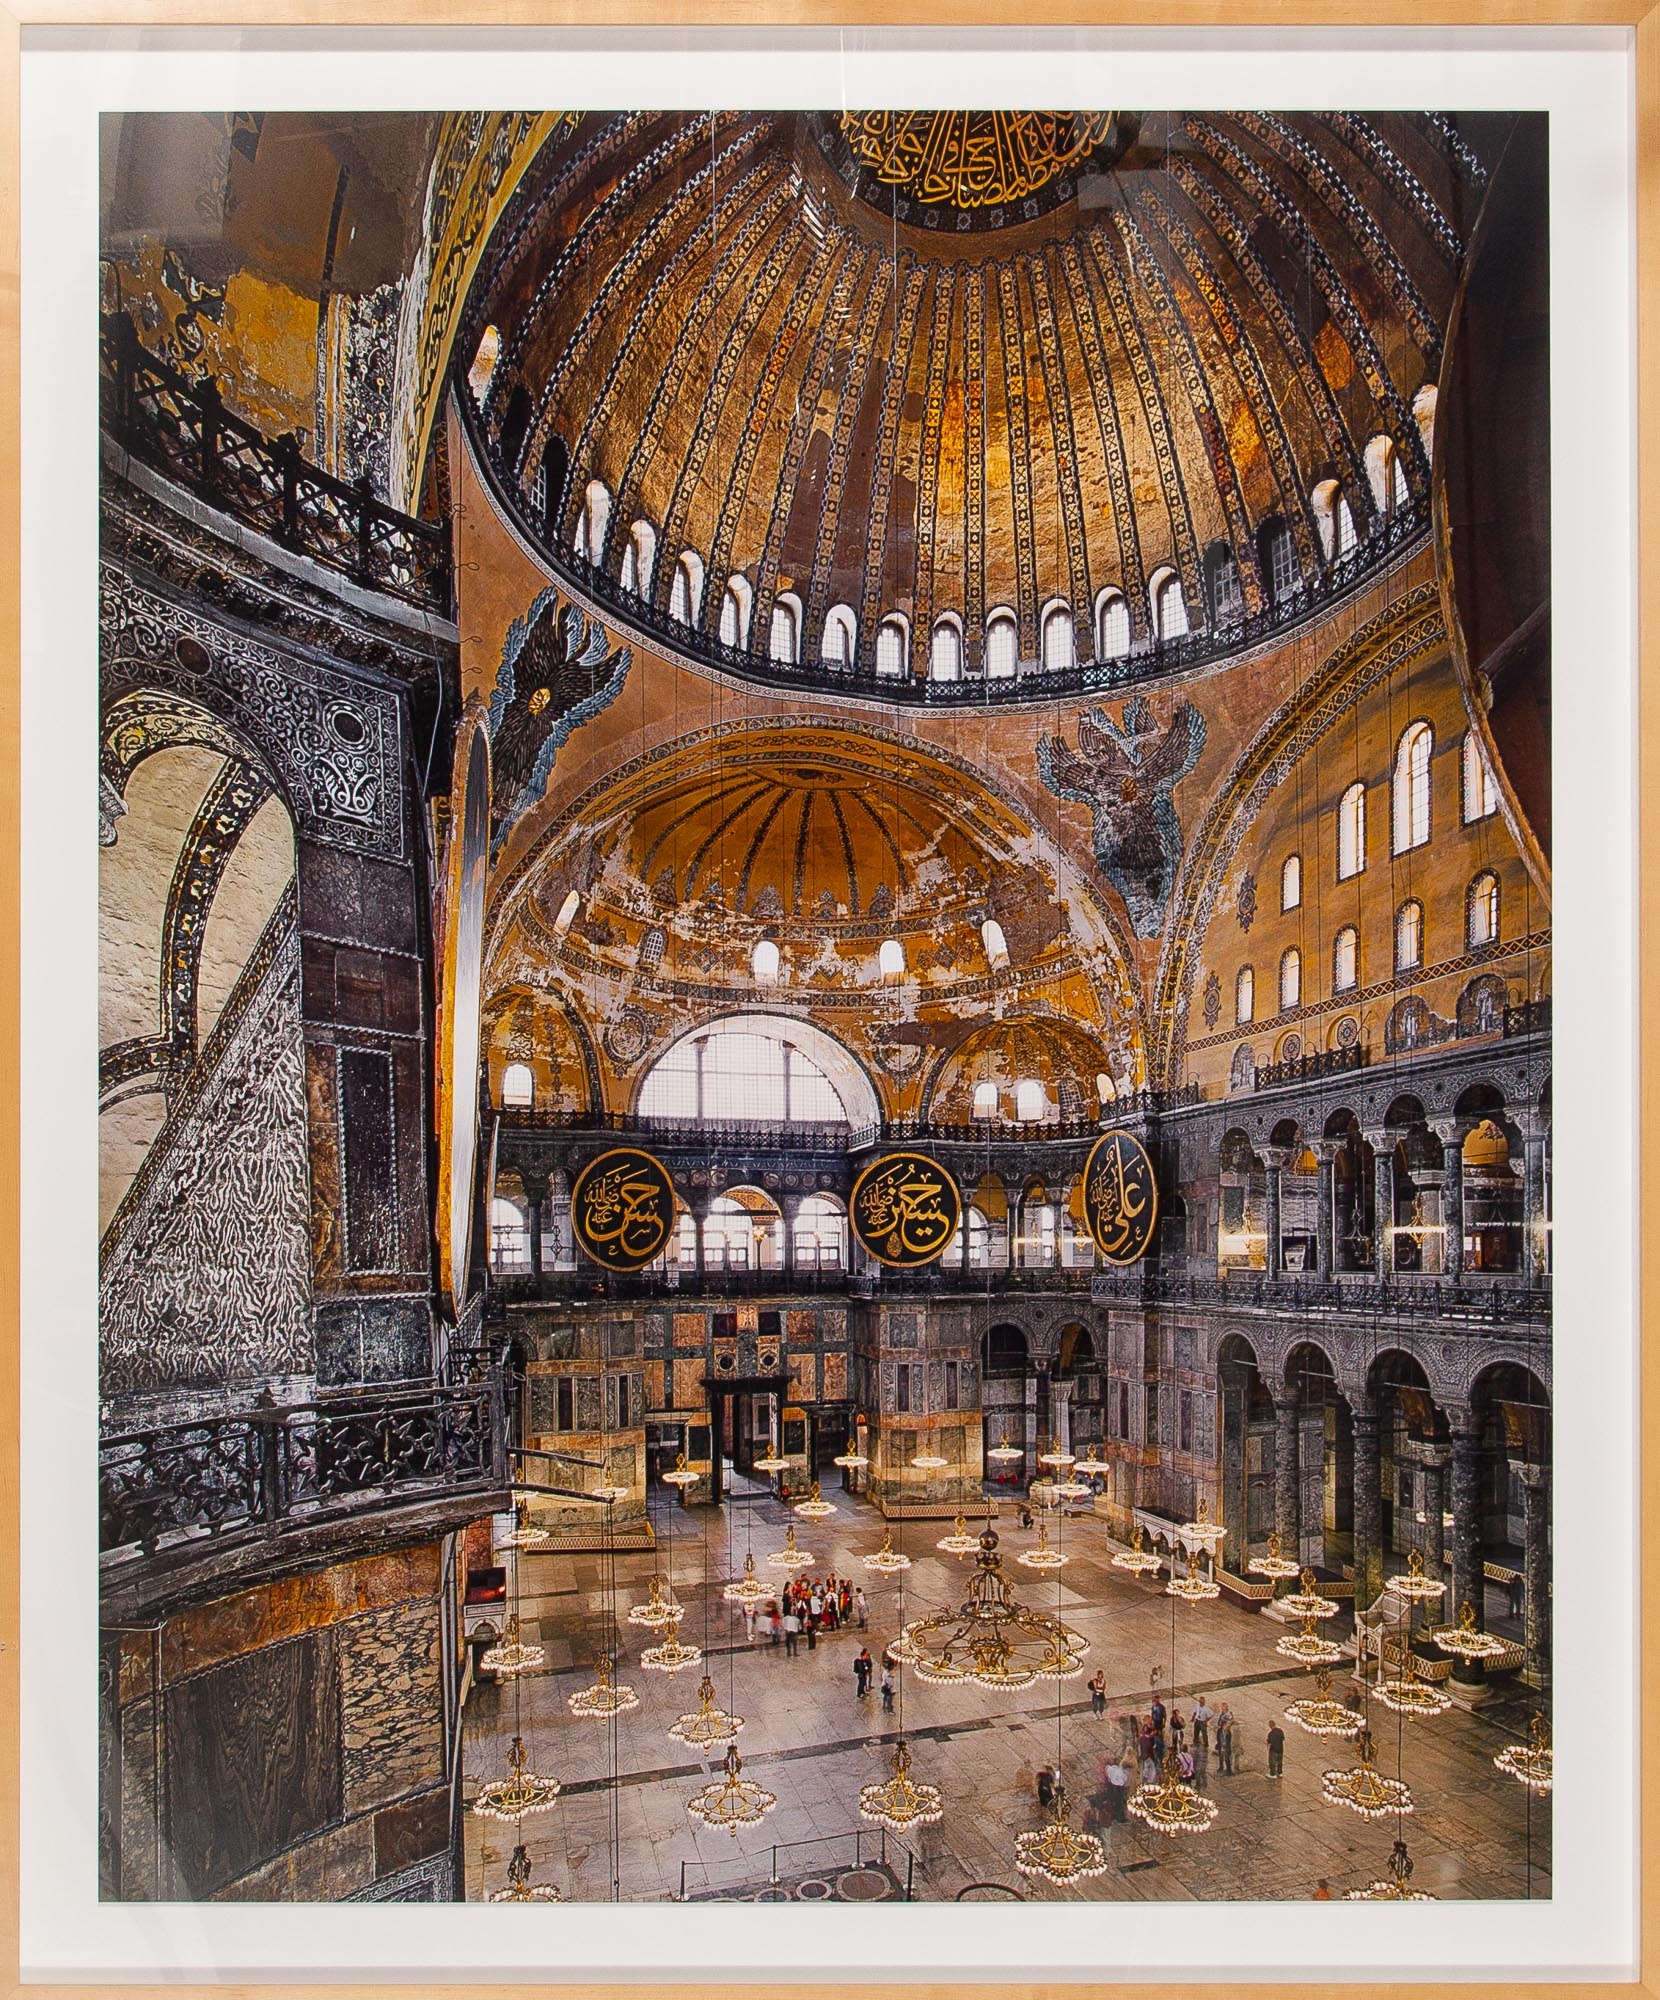 Hagia Sophia, Istanbul, by Ahmet Ertug, 2011